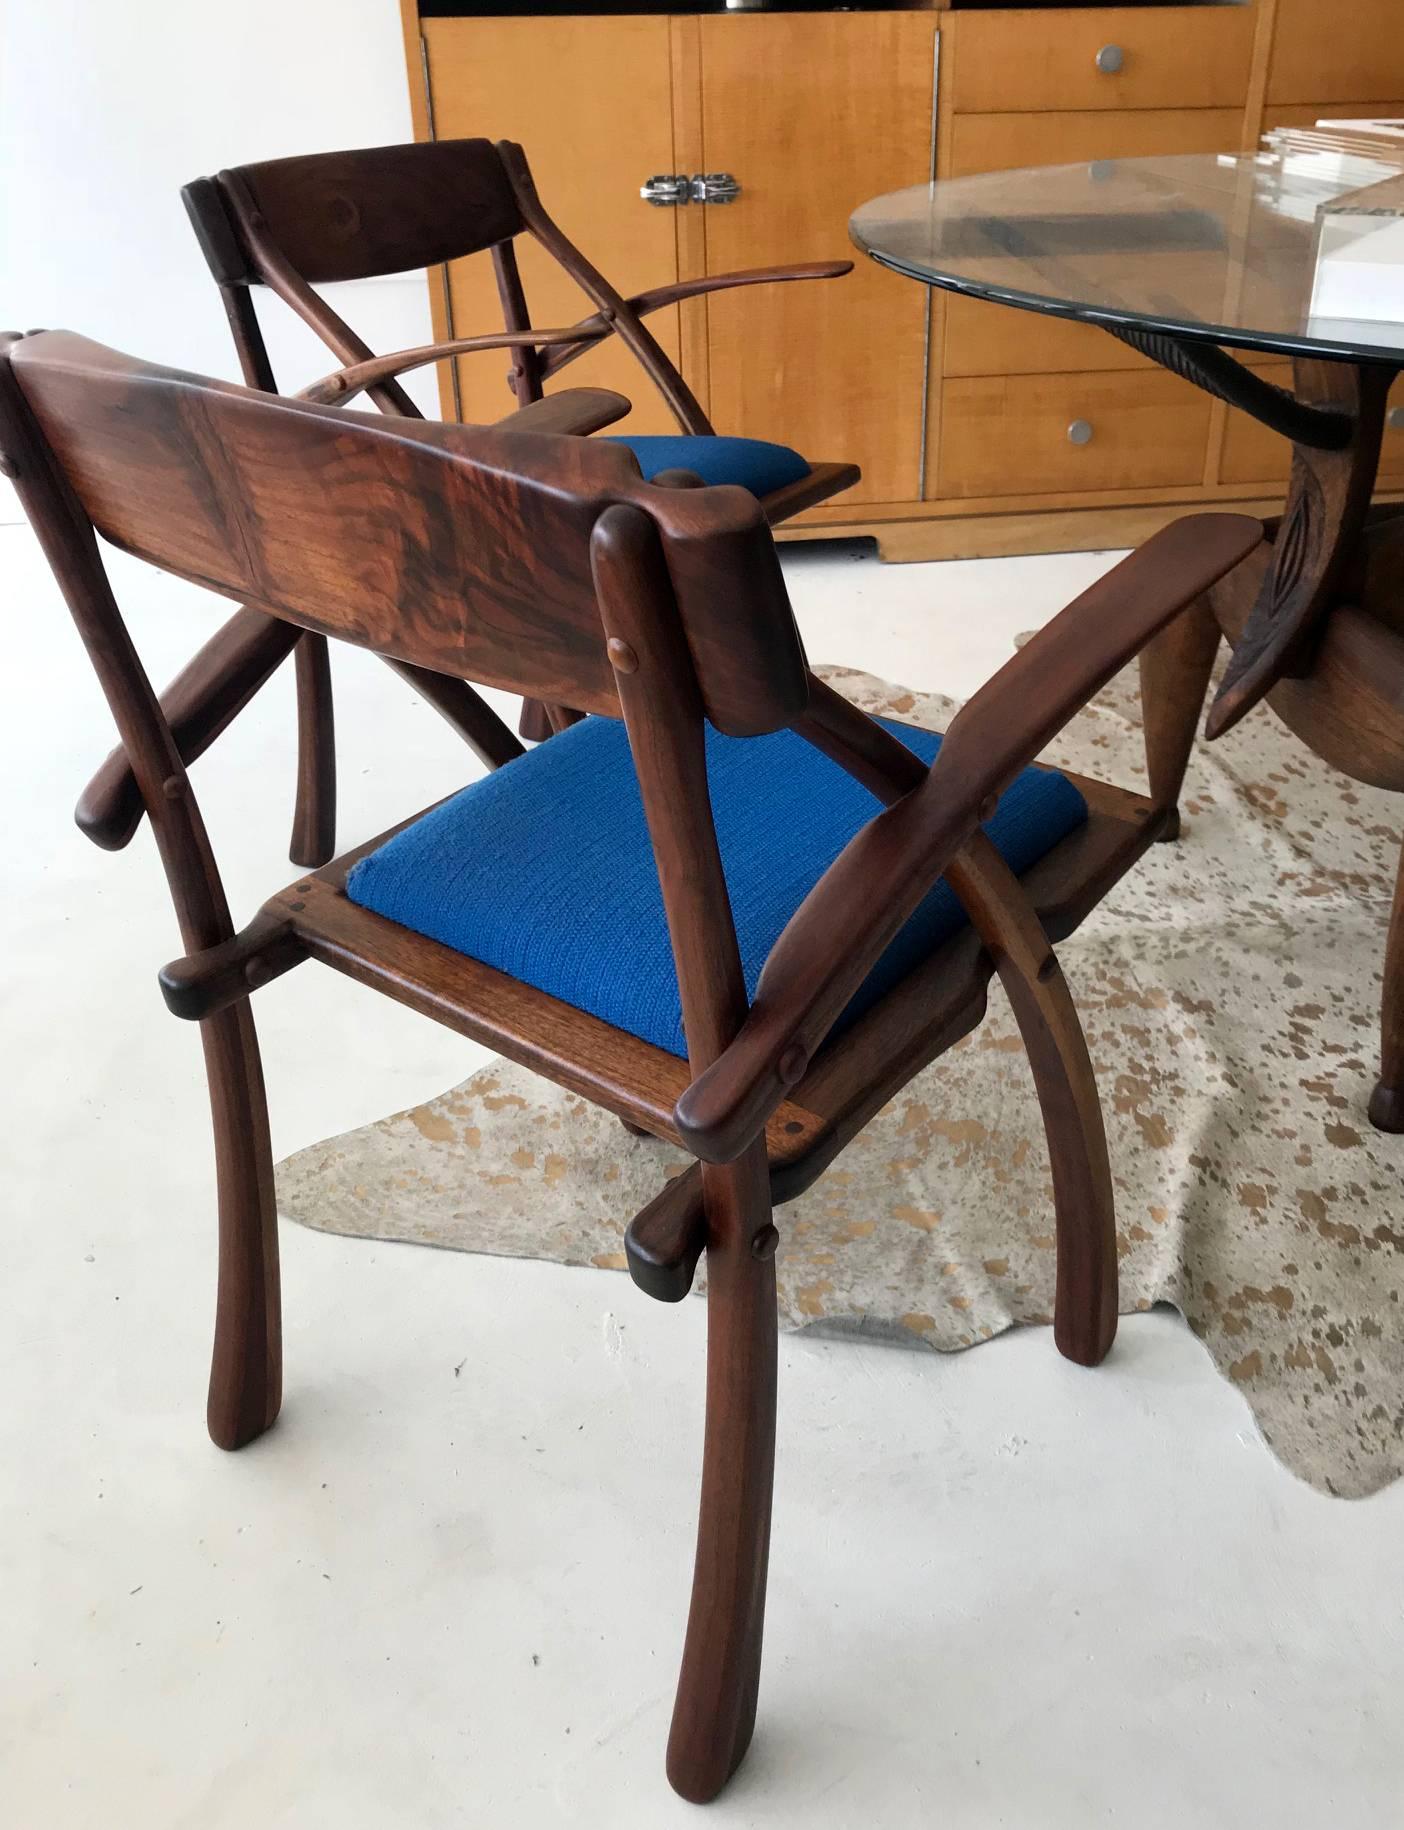 Ein seltenes Paar Wünschelruten-Sessel aus dem Atelier von Arthur Espenet Carpenter (1920-2006), Bolinas, CA. Aus gemasertem Nussbaumholz mit sichtbarer Dübelkonstruktion, einer geformten Rückenlehne, die in die konturierten Armlehnen übergeht.